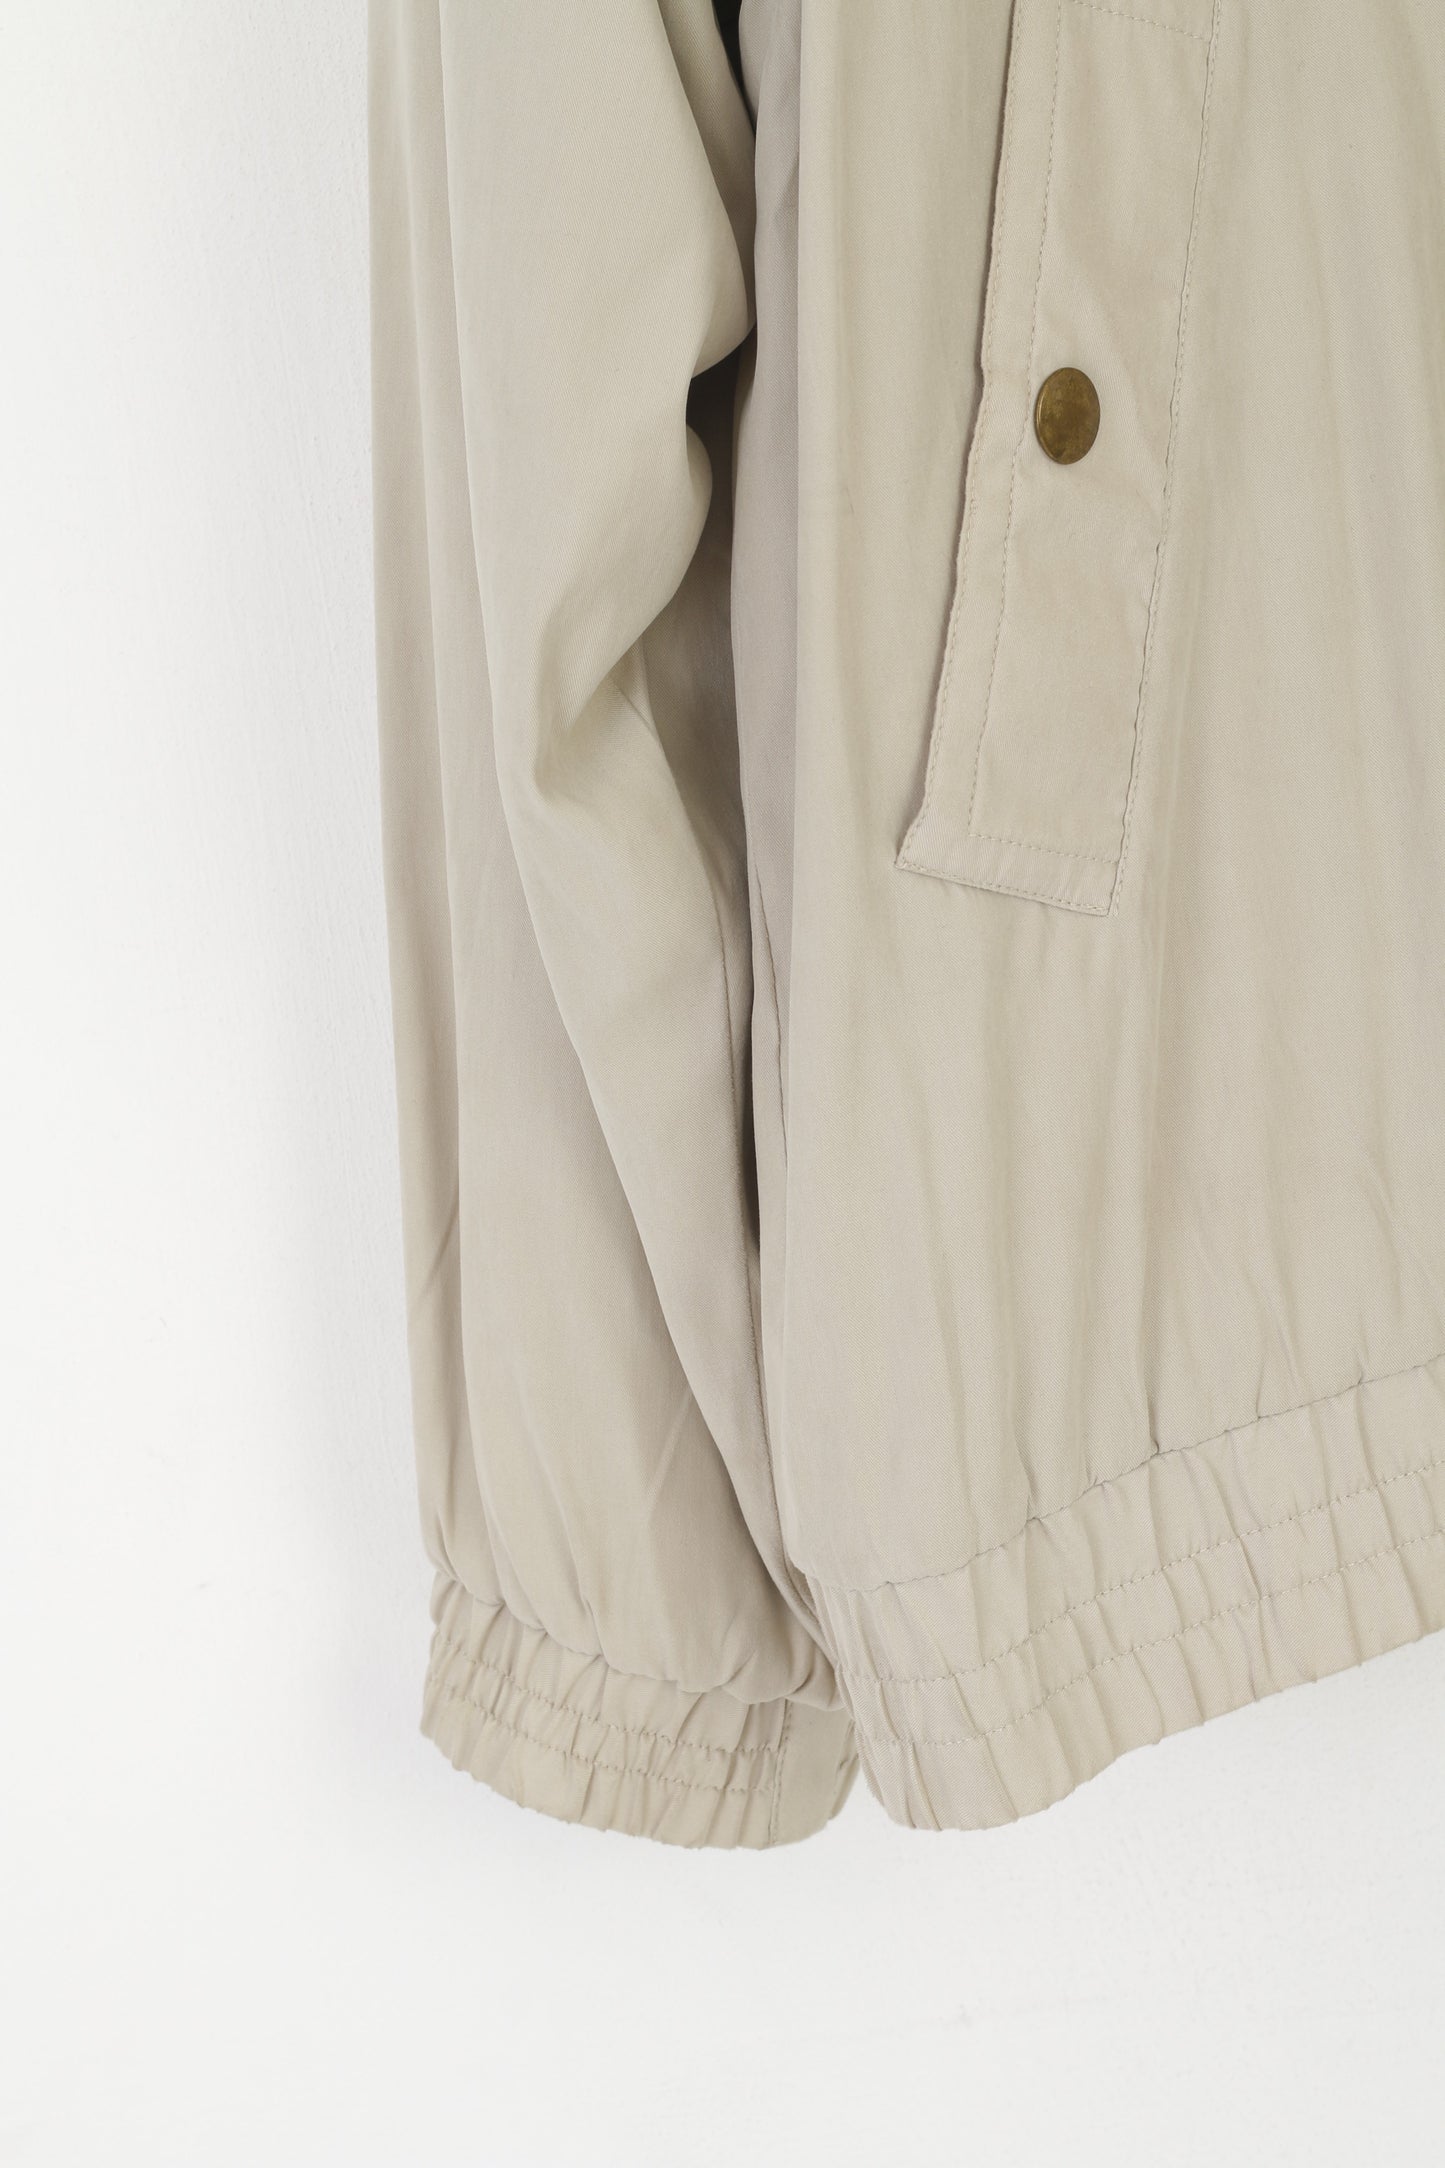 James Cowan Men L Jacket Beige Vintage Harrington Full Zip Fleece Lined Top